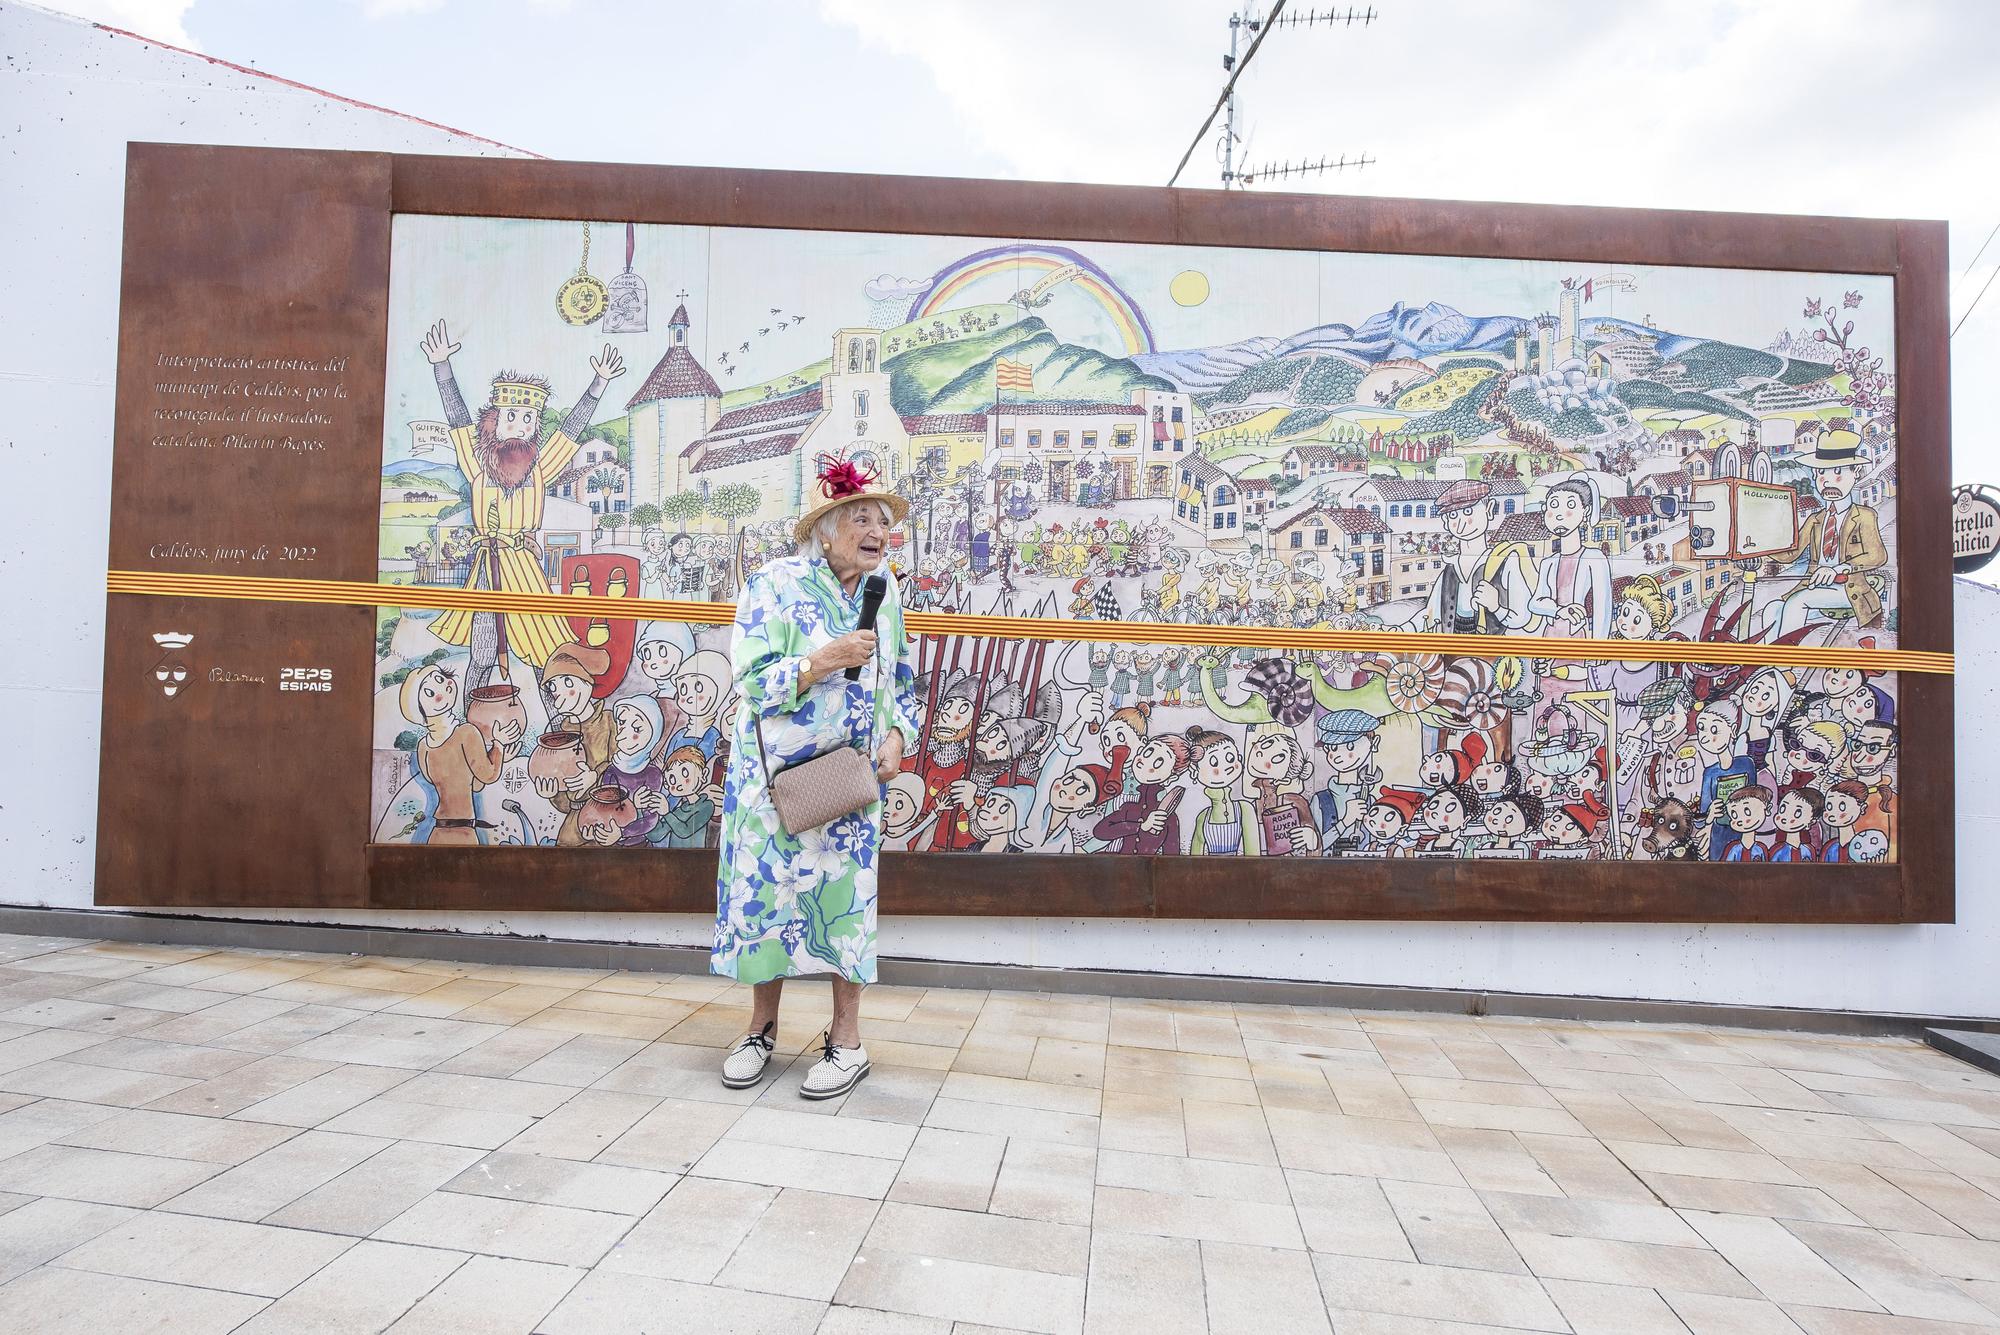 Pilarín Bayés inaugura un mural a Calders